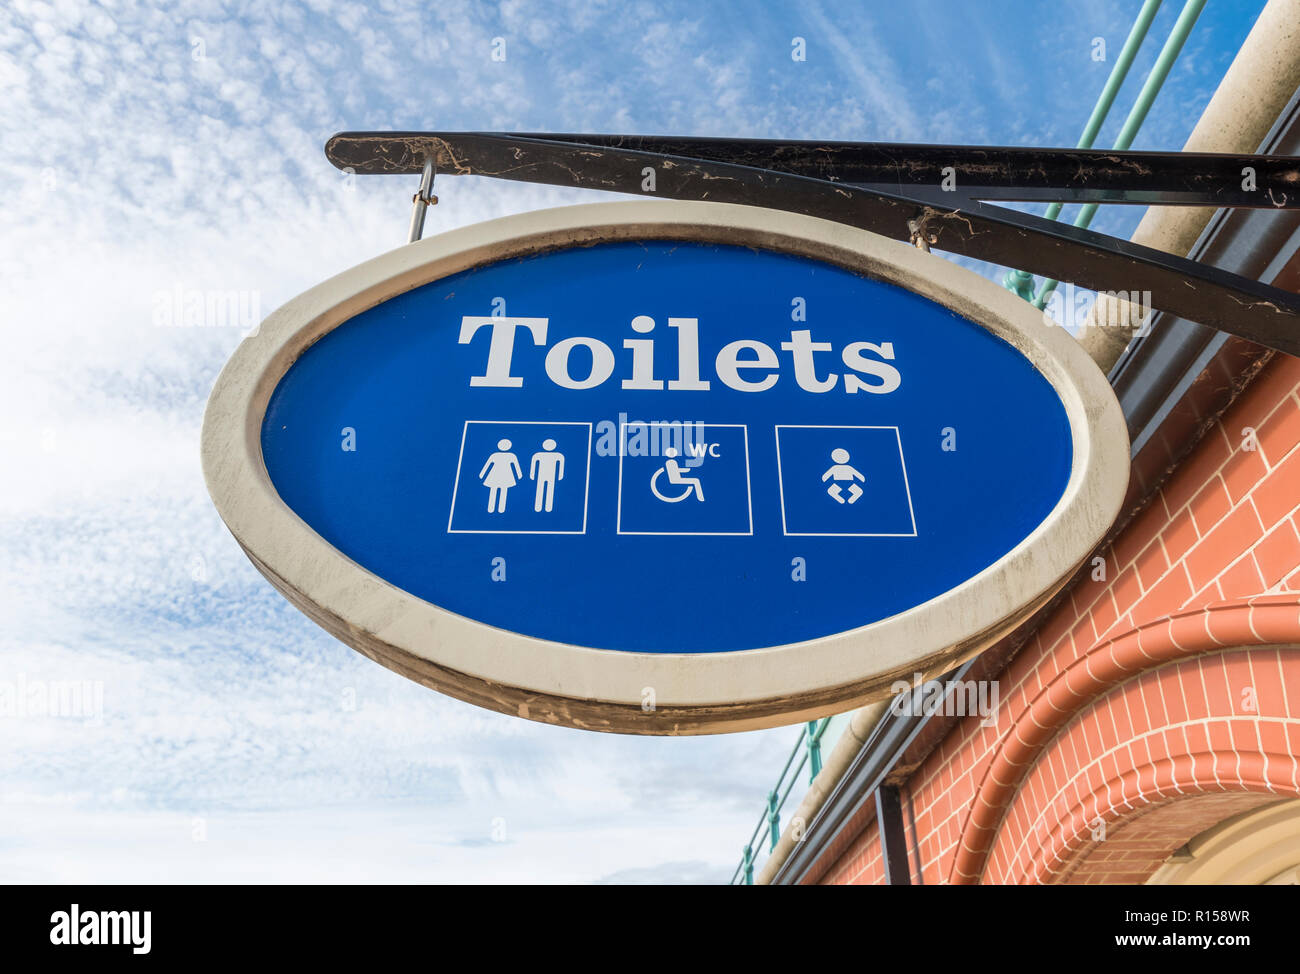 Hängende öffentliche Toiletten Schild für Männer, Frauen und Behinderte, in Großbritannien. Britische Öffentlichkeit Loos. Öffentliche Toiletten. Stockfoto